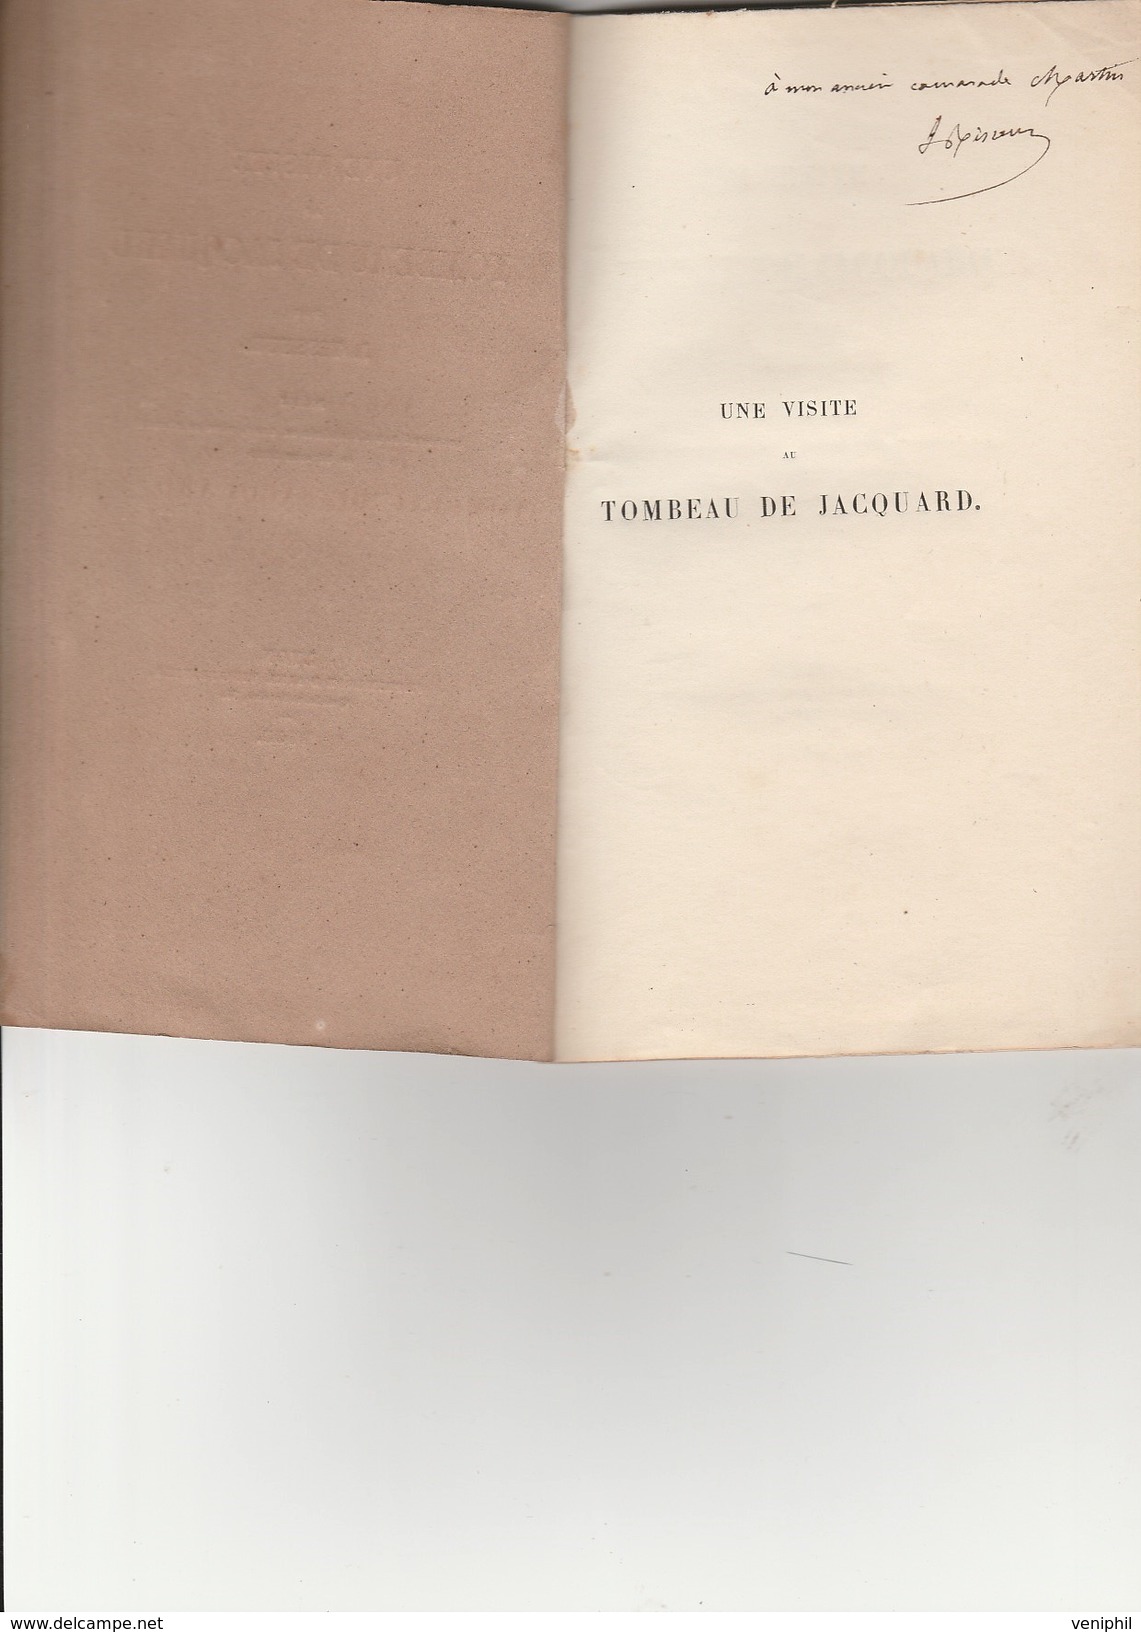 RECUEIL POEME PAR J TISSEUR  AVEC DEDICACE- "UNE VISITE AU TOMBEAU DE JACQUARD " -- 35 Pages -Lyon 1853 - French Authors